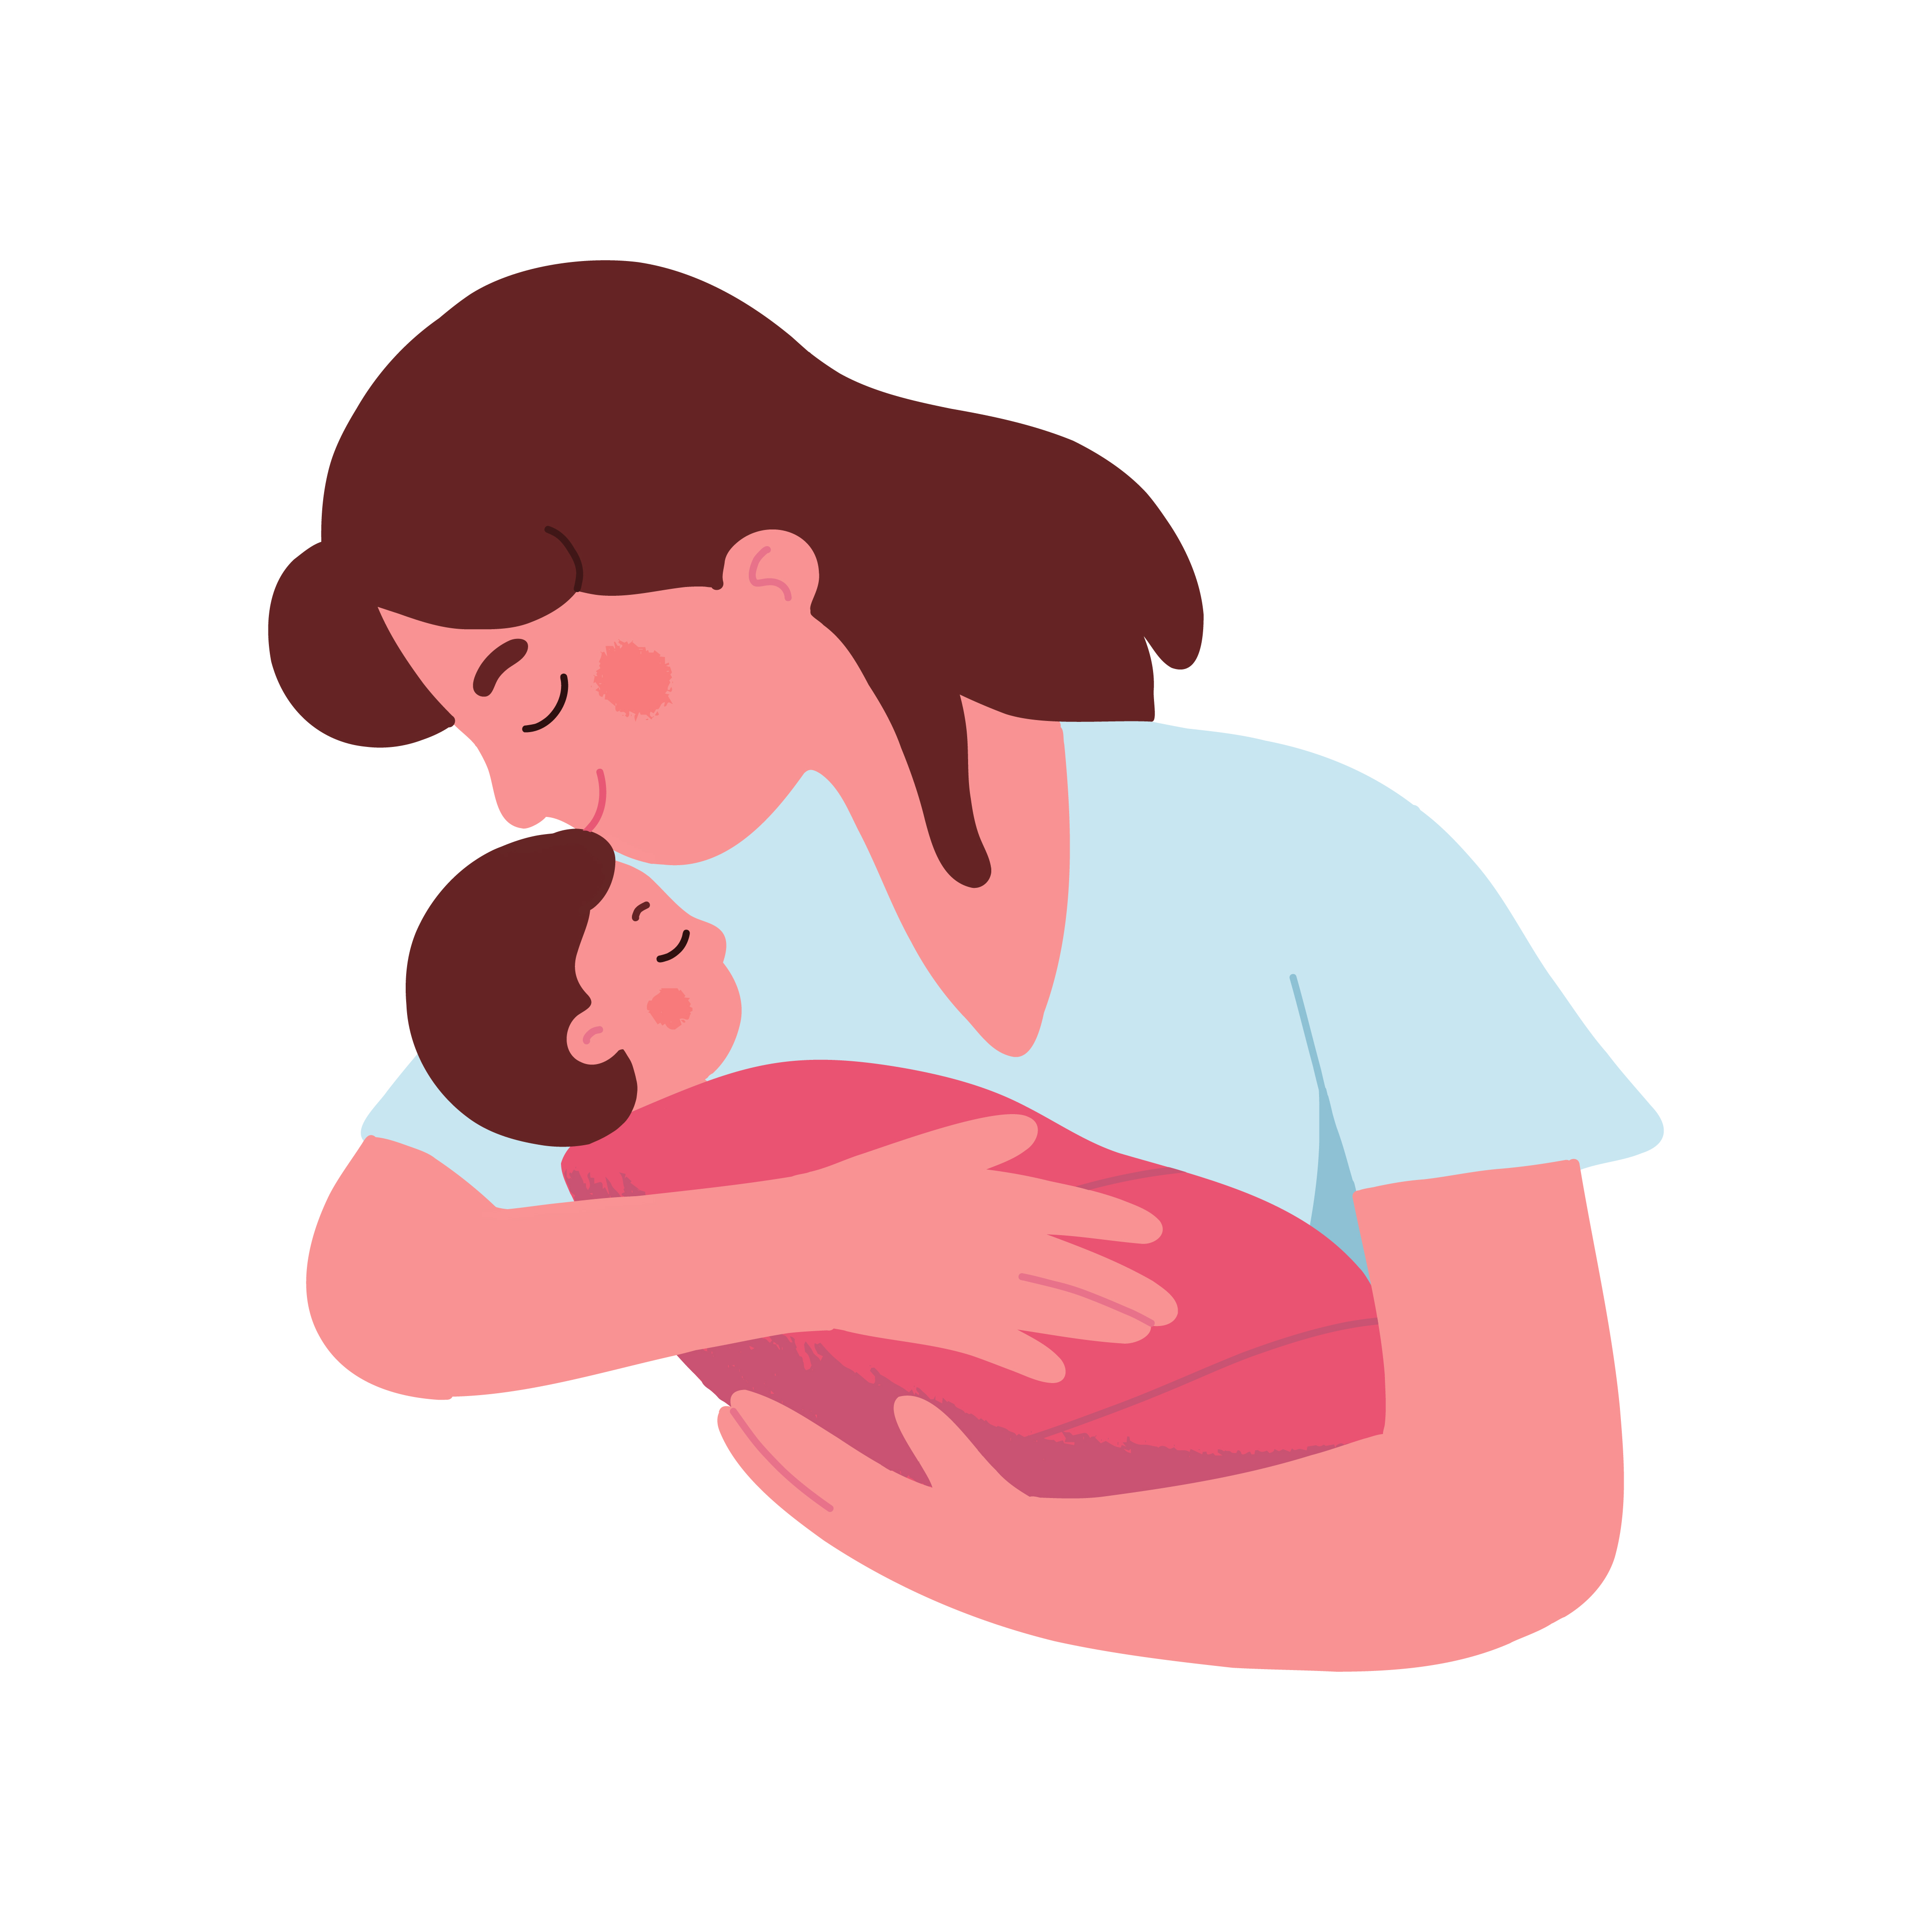 Mama hug